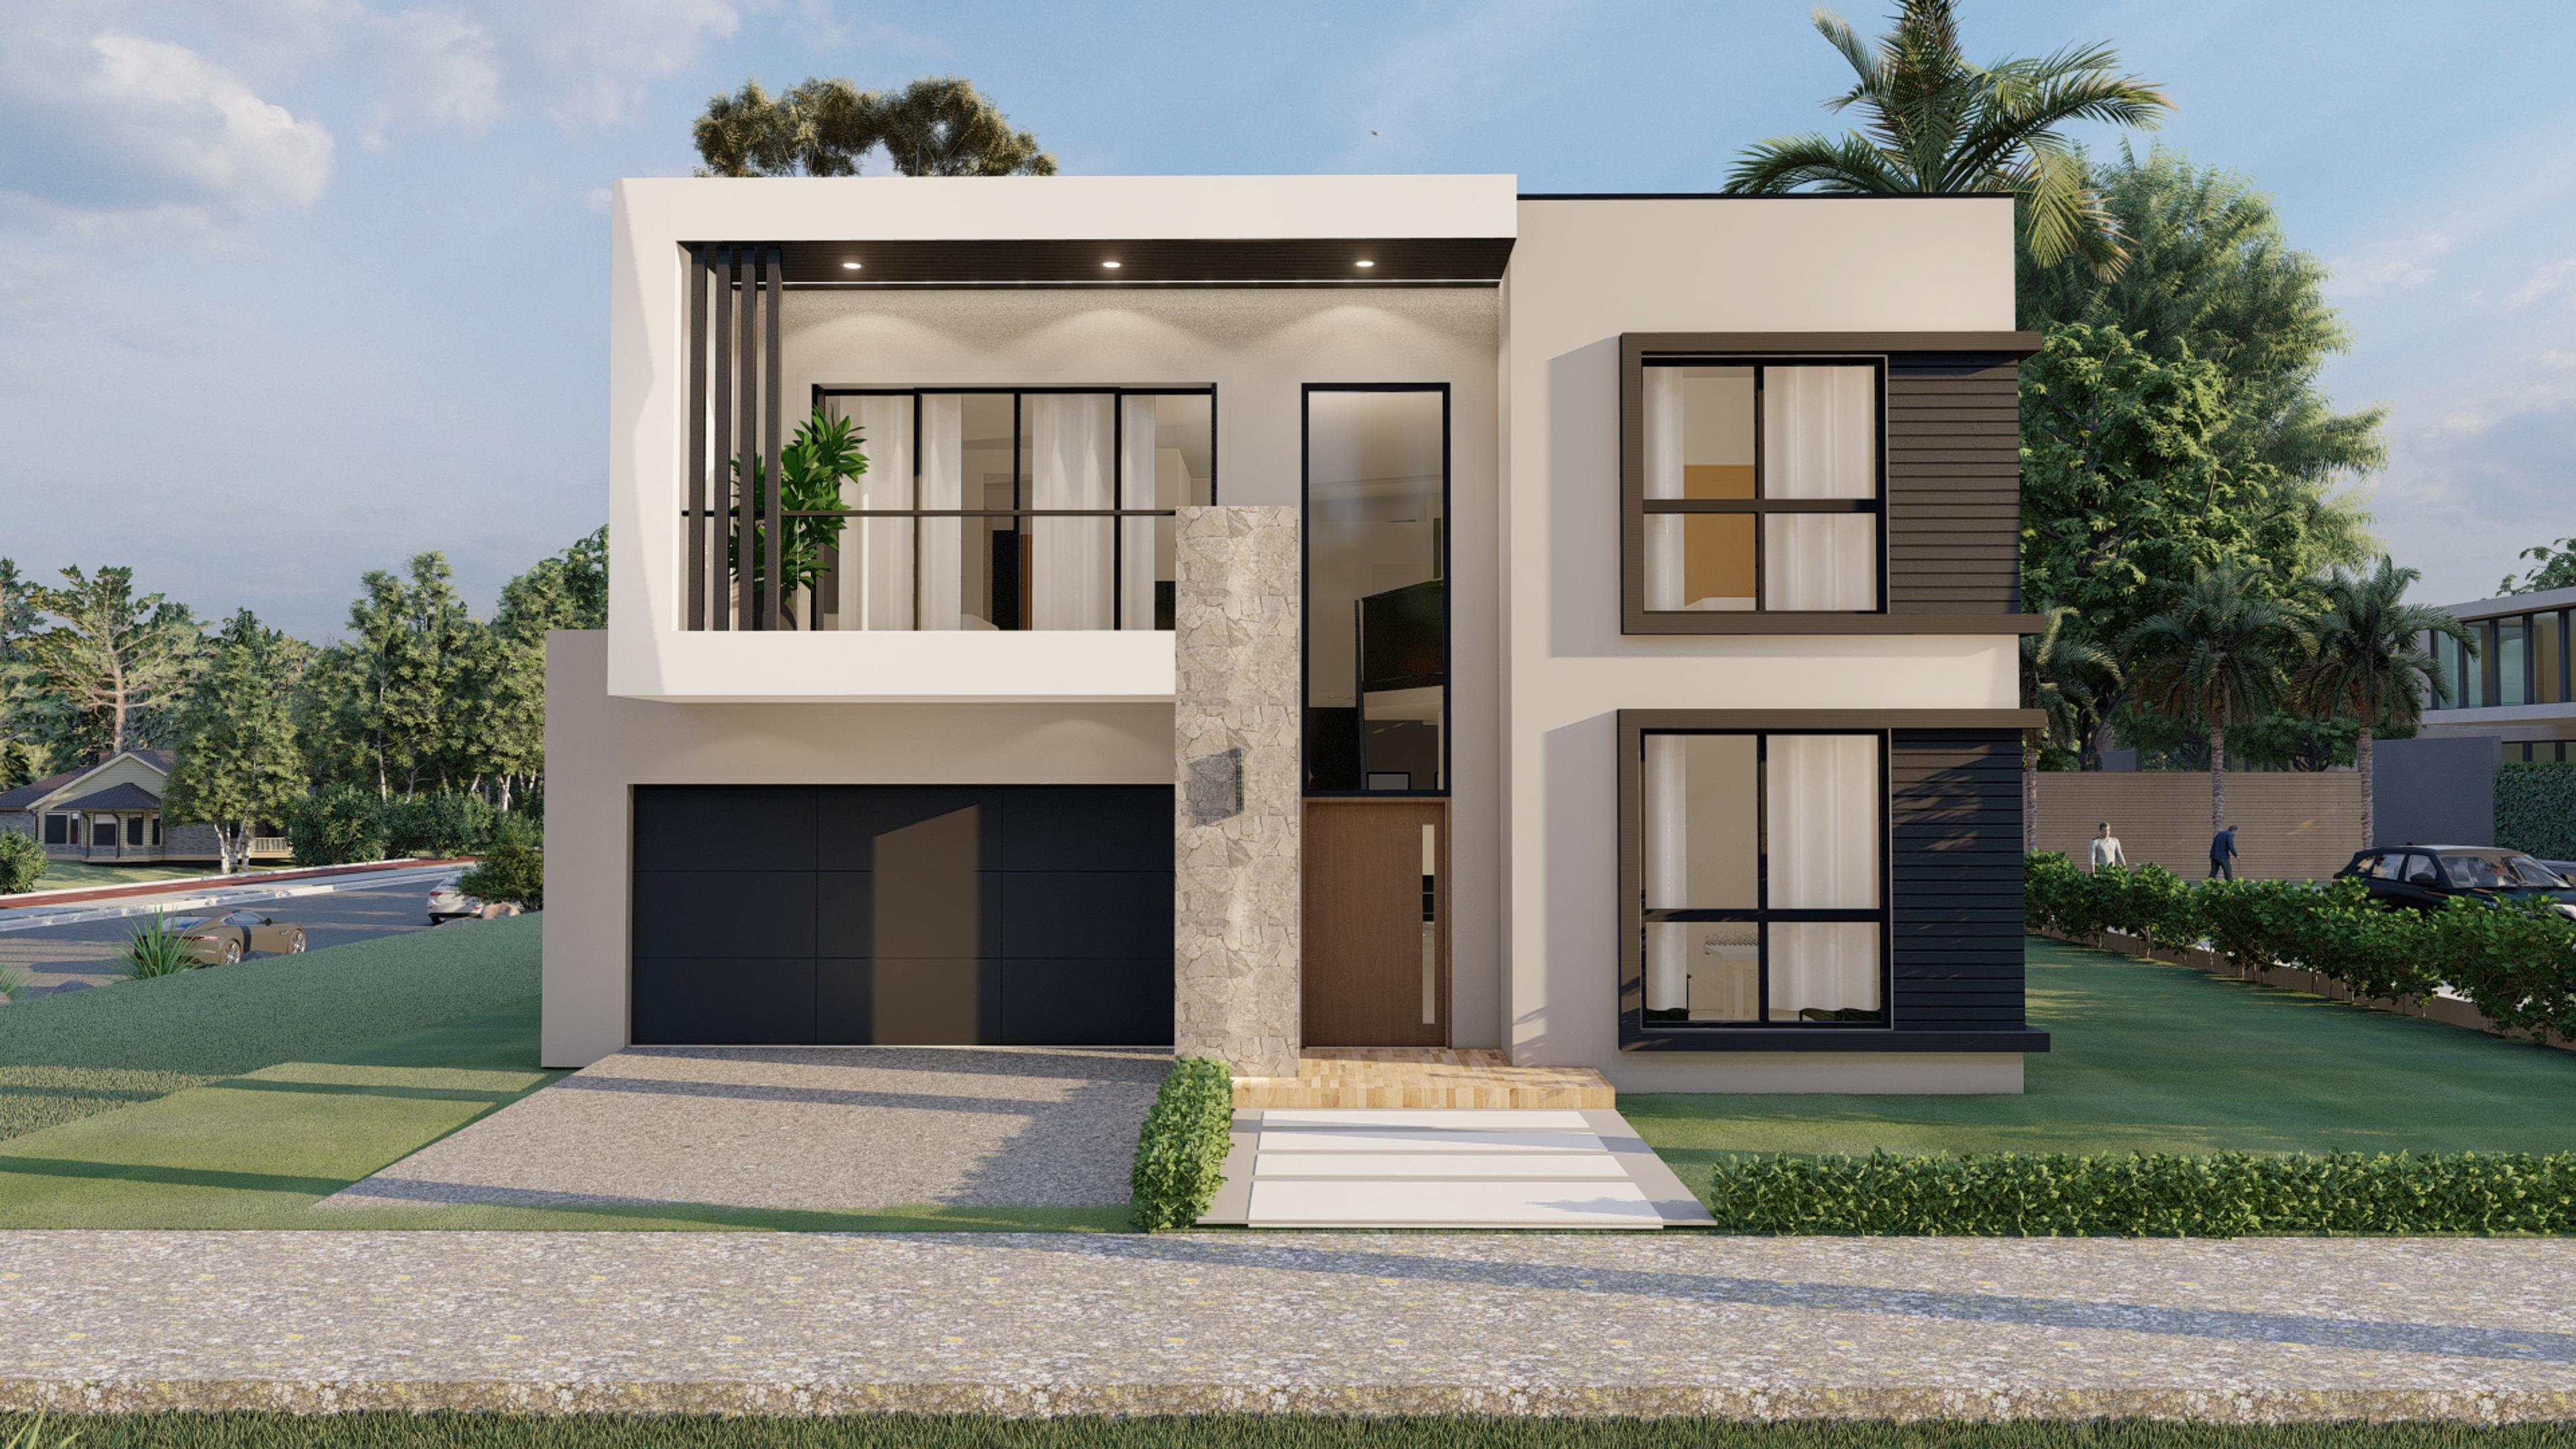 Dezire Homes build showing a unique facade design